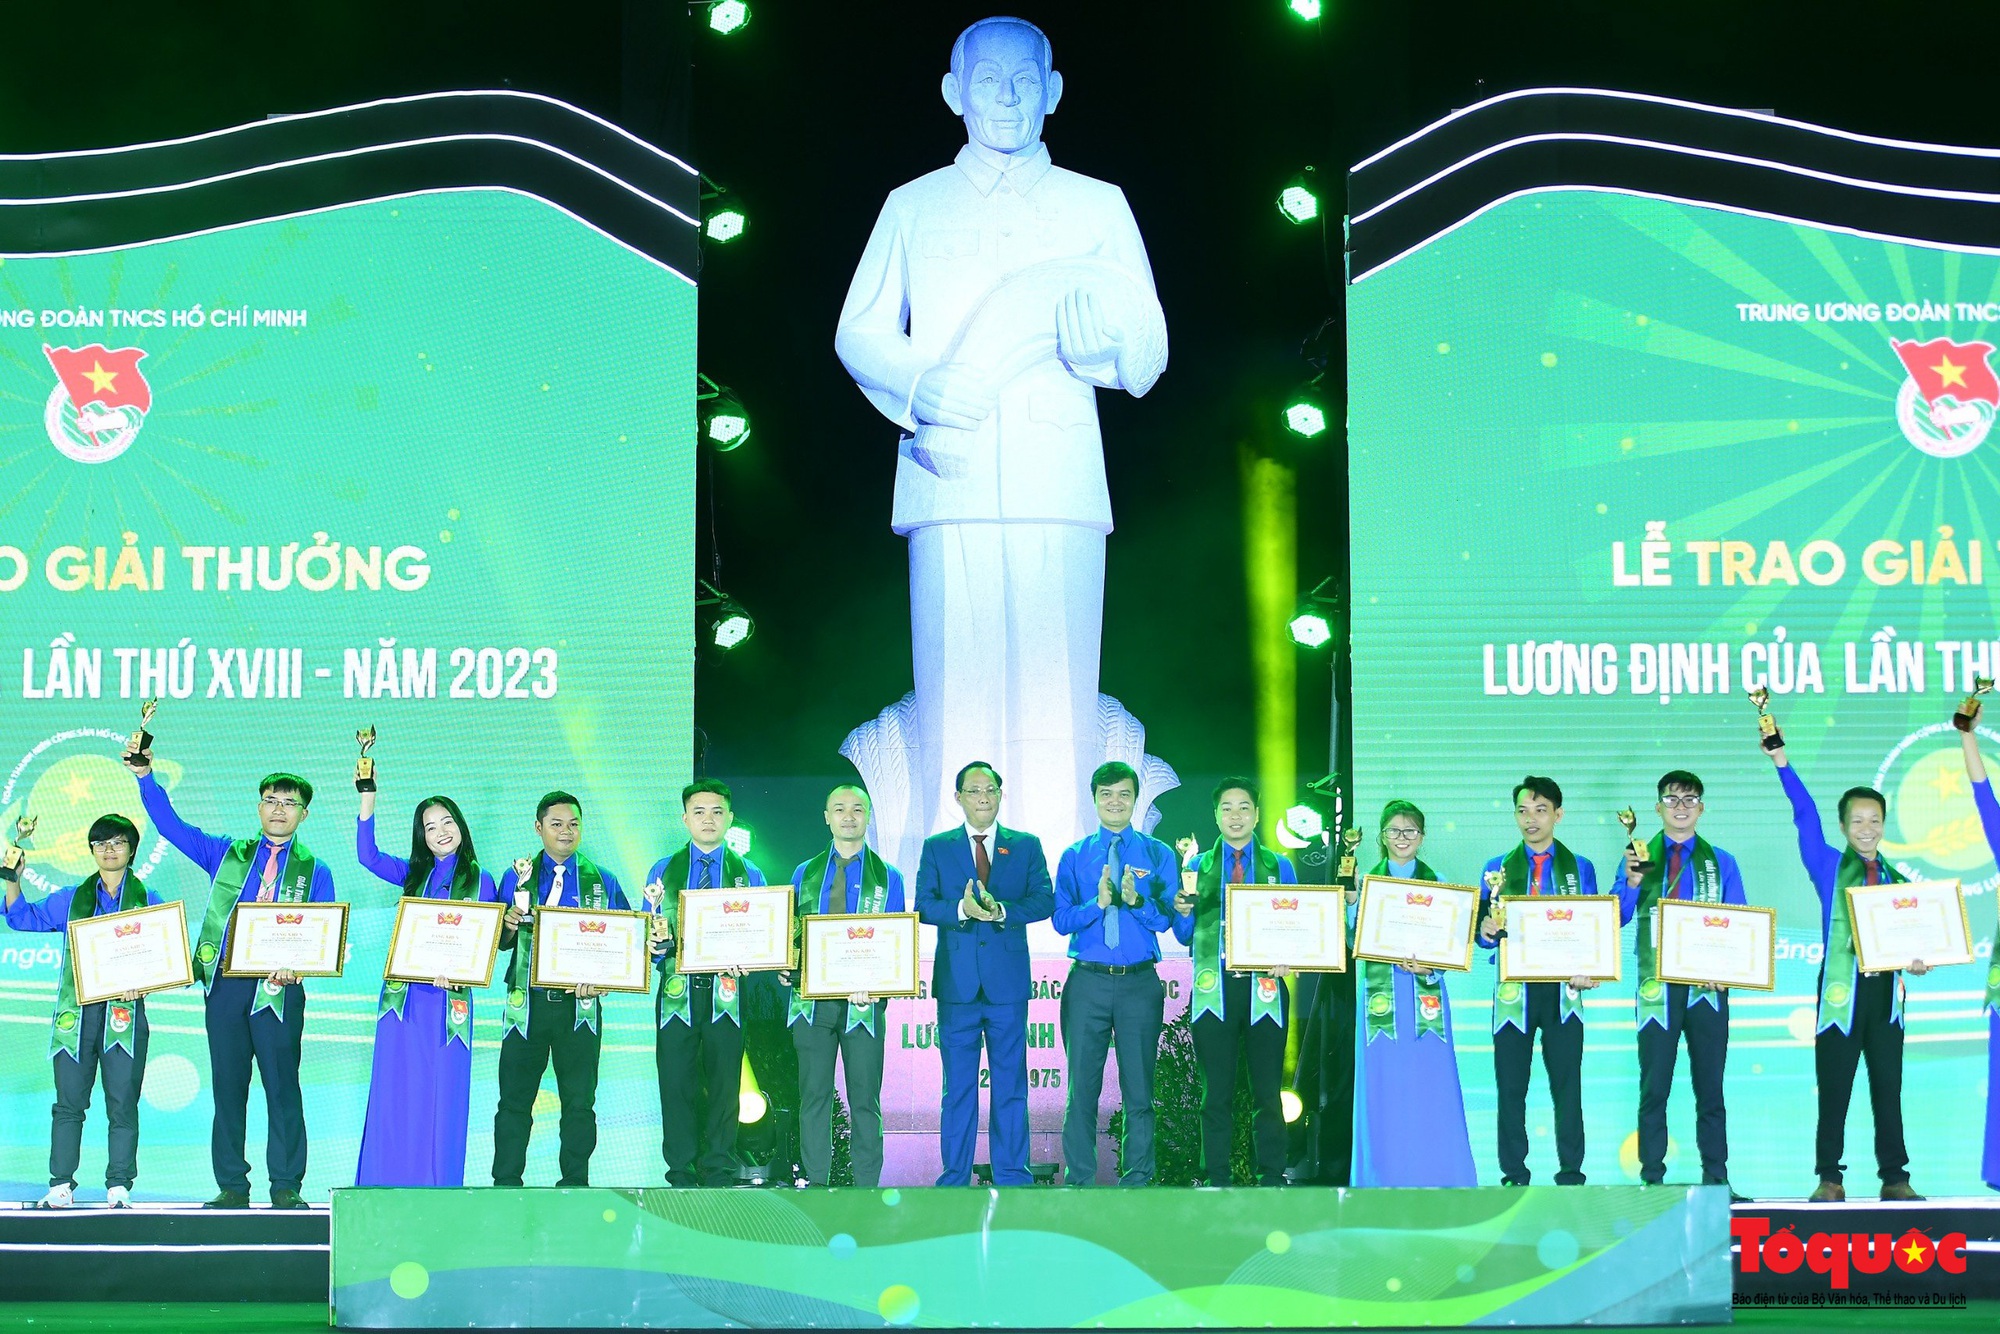 Trao Giải thưởng Lương Định Của cho 42 thanh niên xuất sắc về nông nghiệp - Ảnh 4.